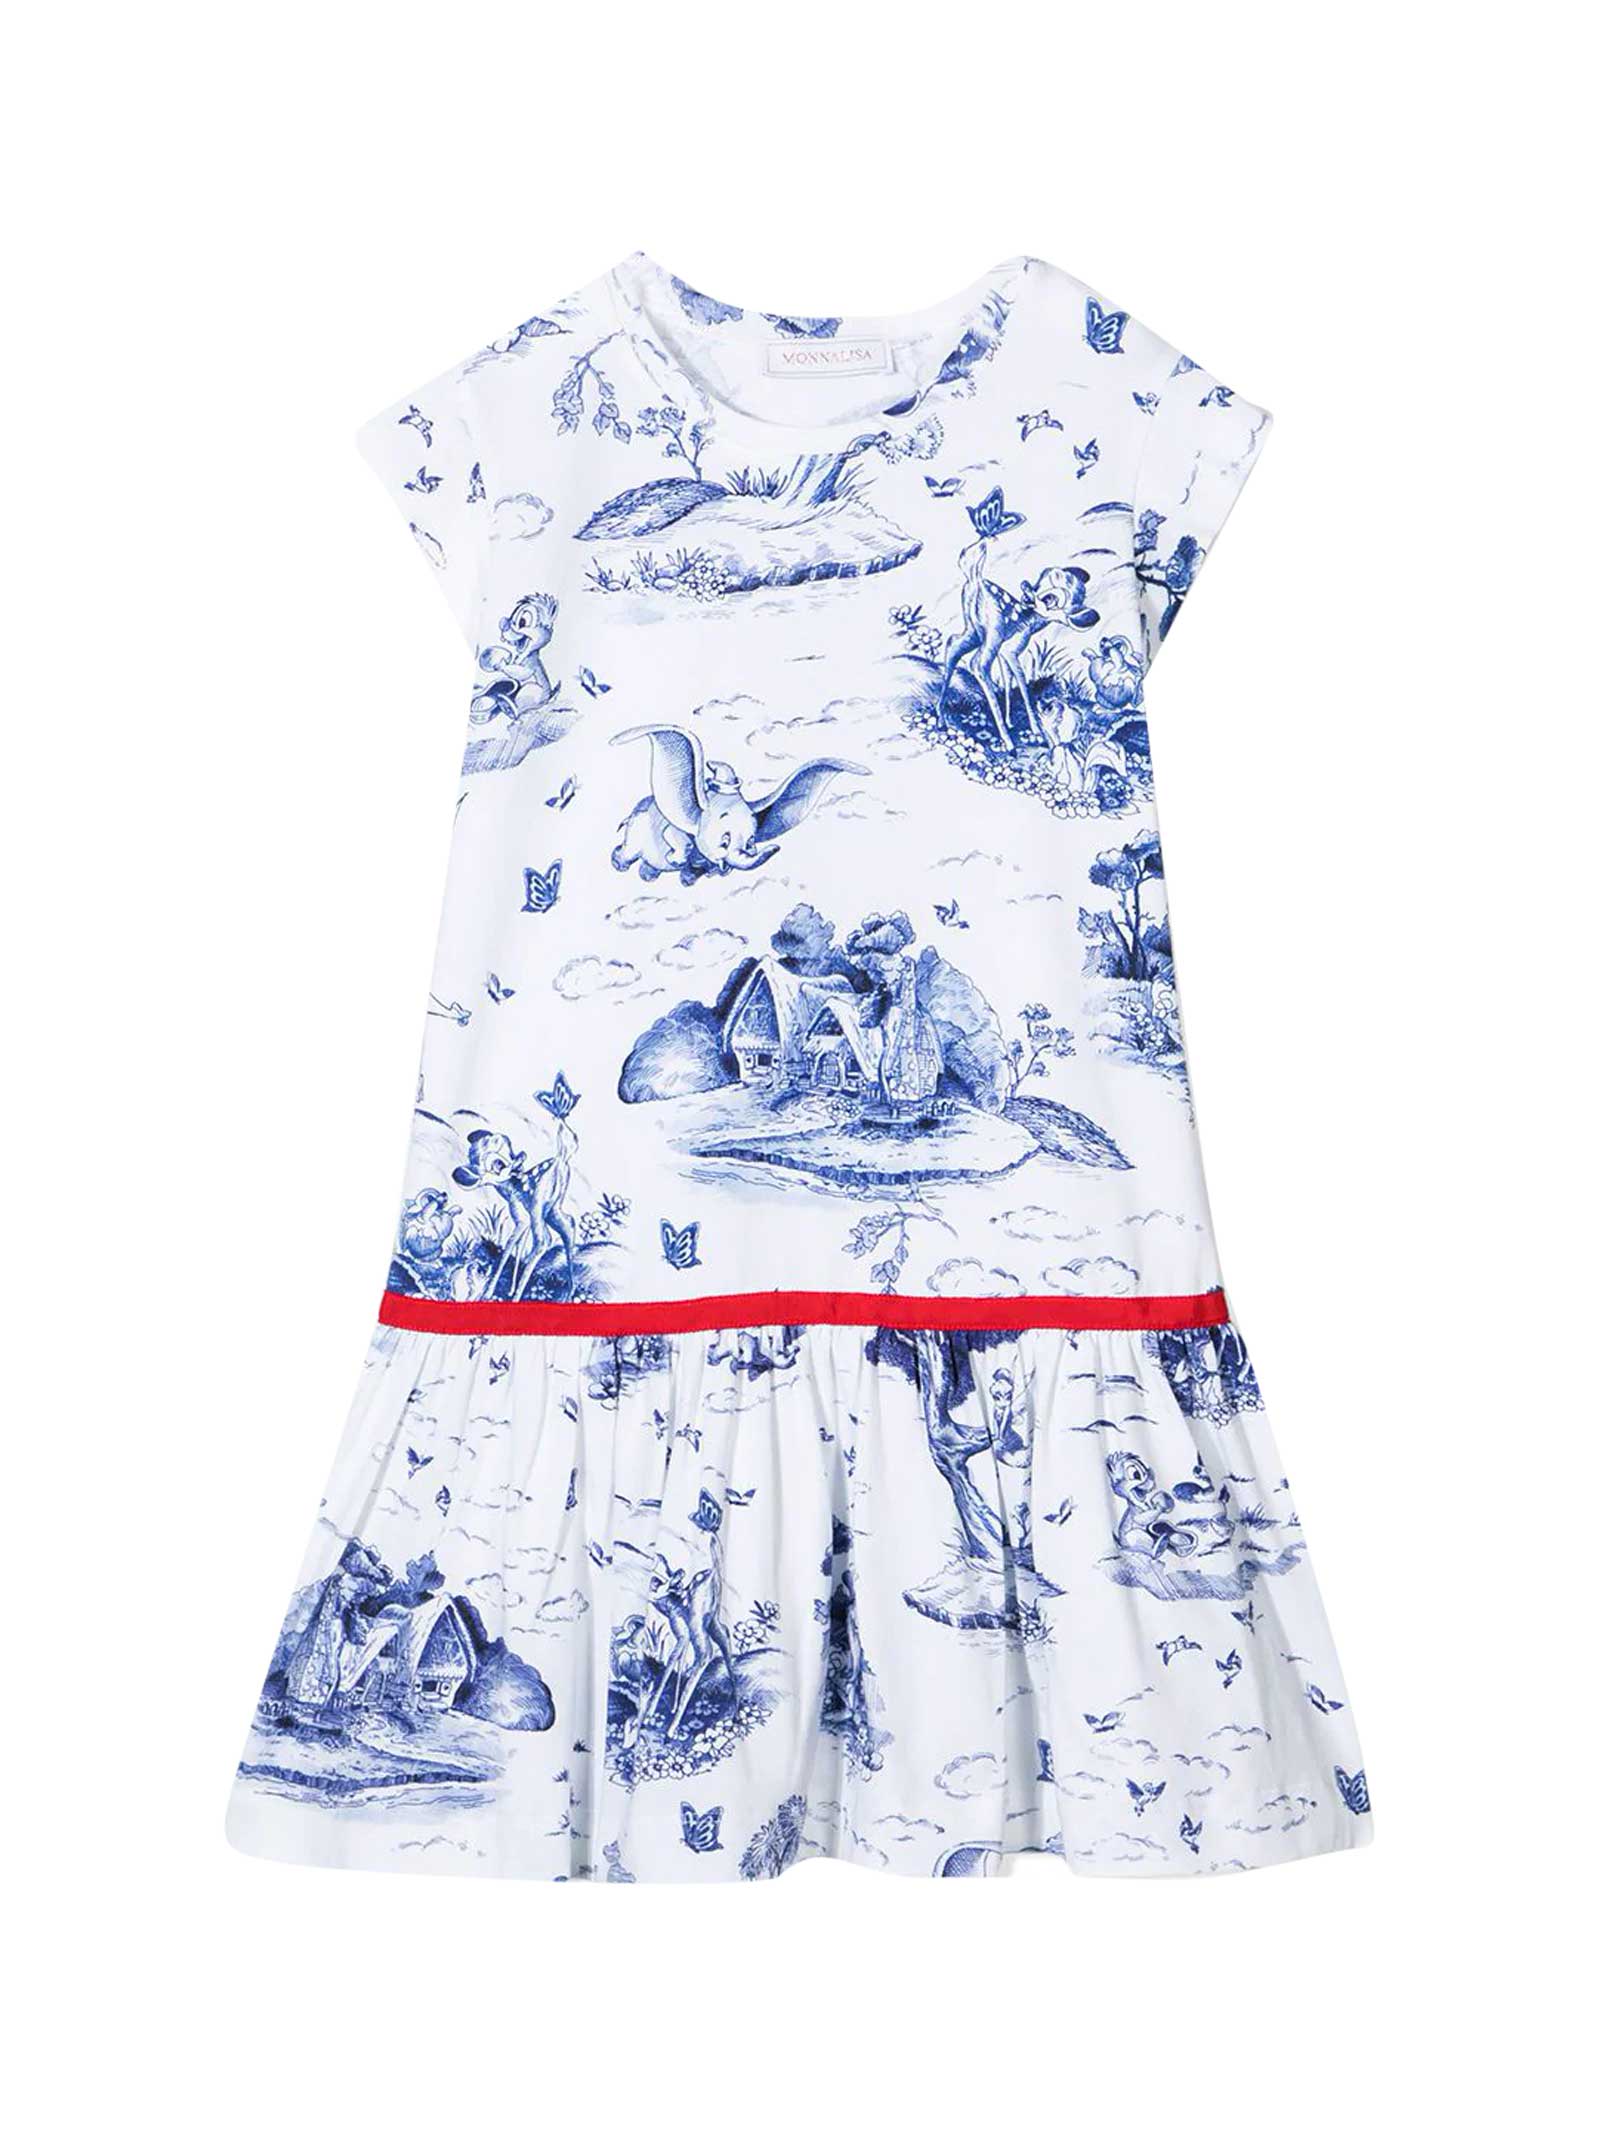 Monnalisa White And Blue Dress